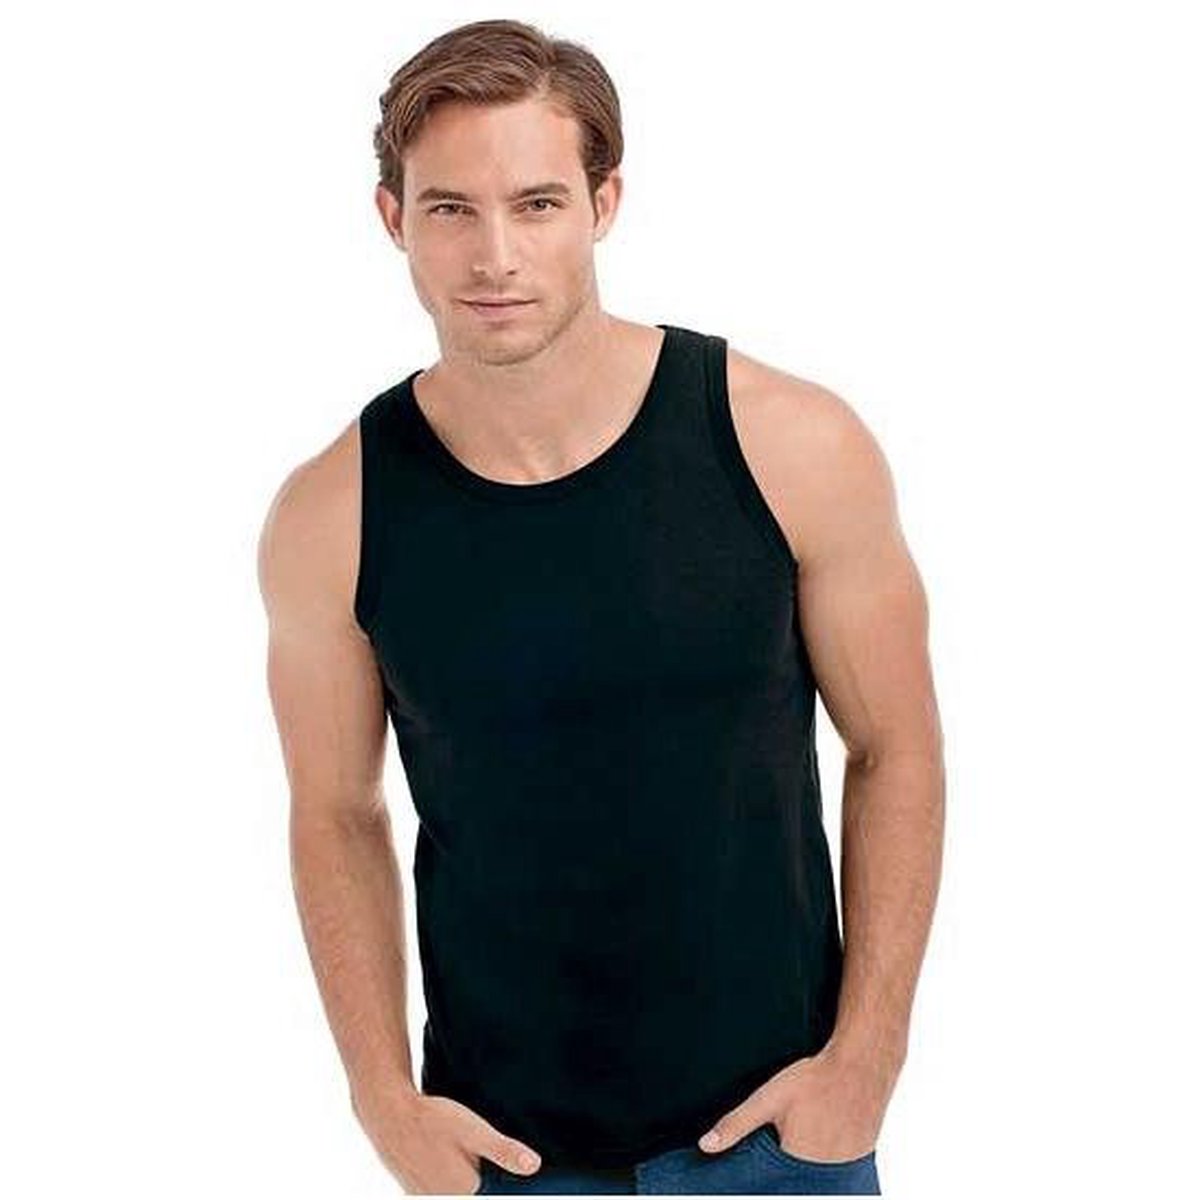 Zwart heren t-shirt mouwen XL bol.com